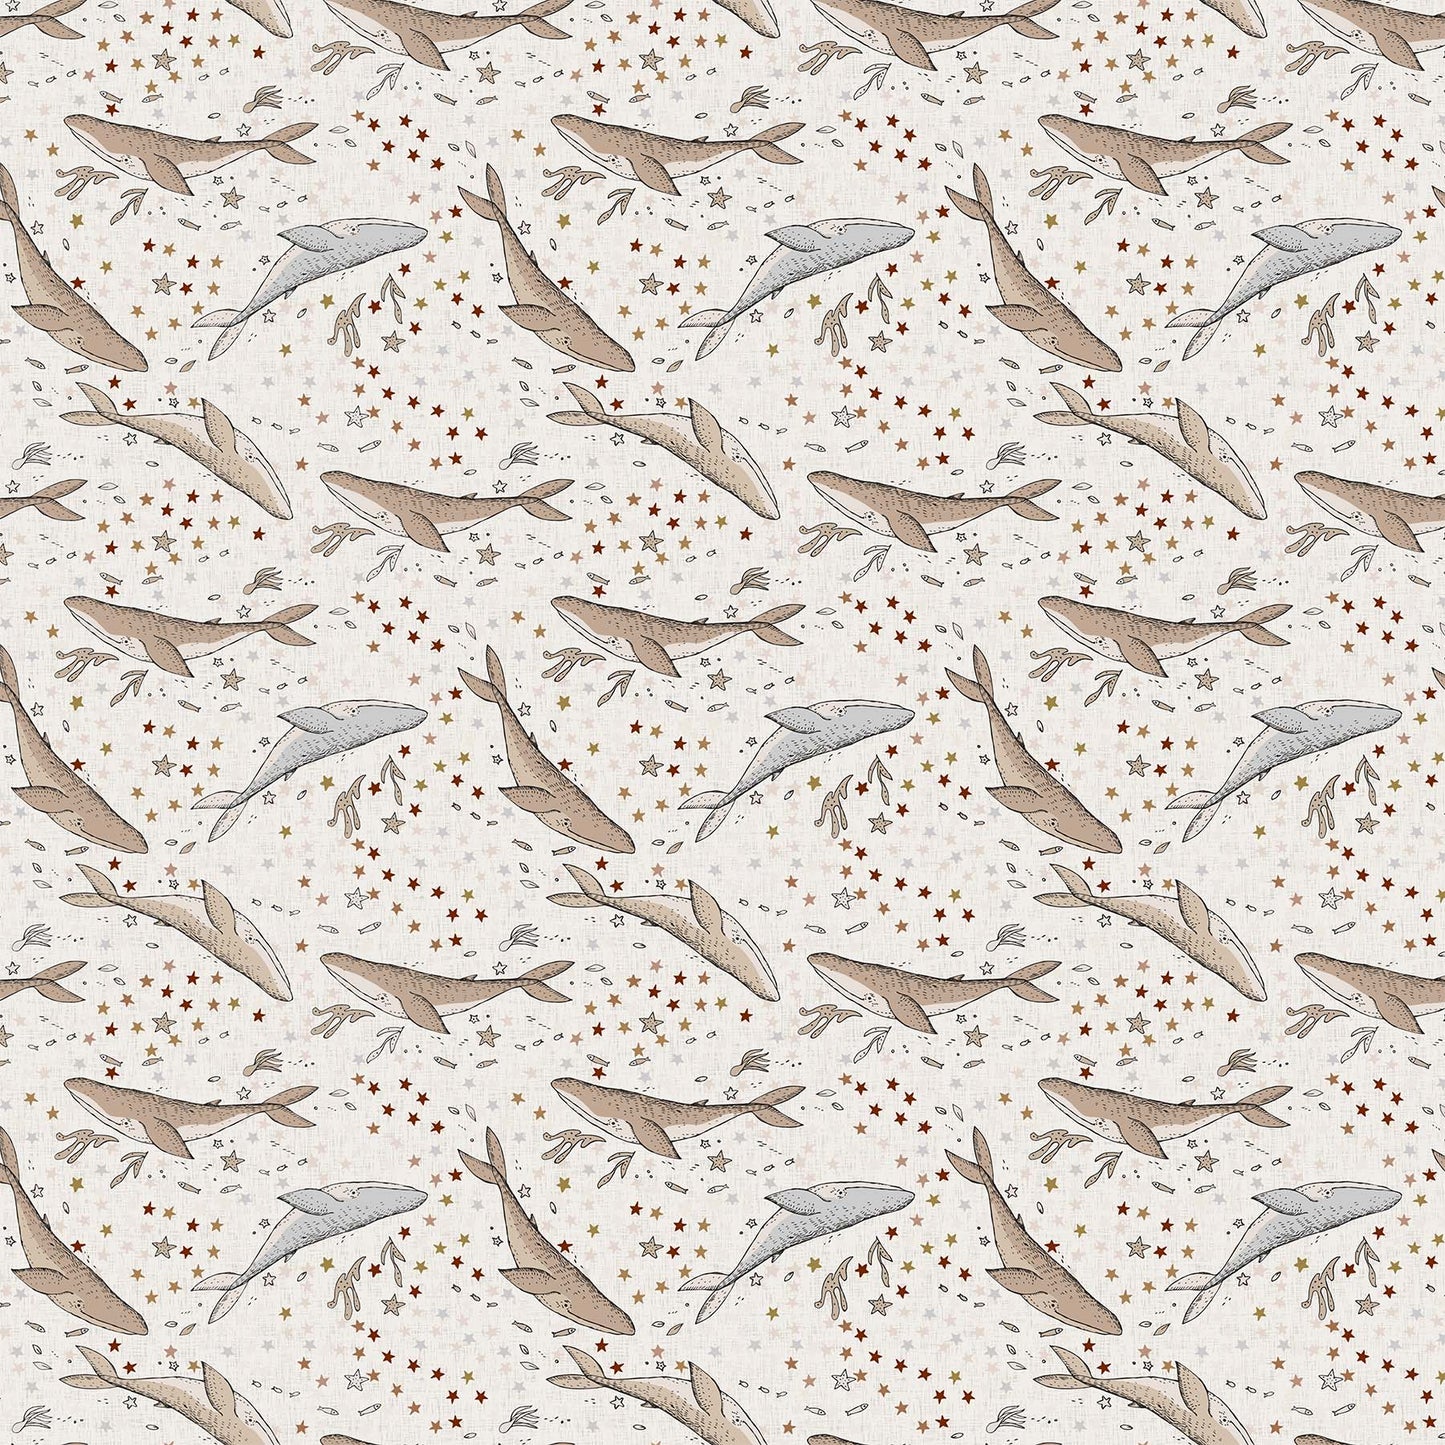 FIGO Fabrics - Calm Waters - Whales - Cream